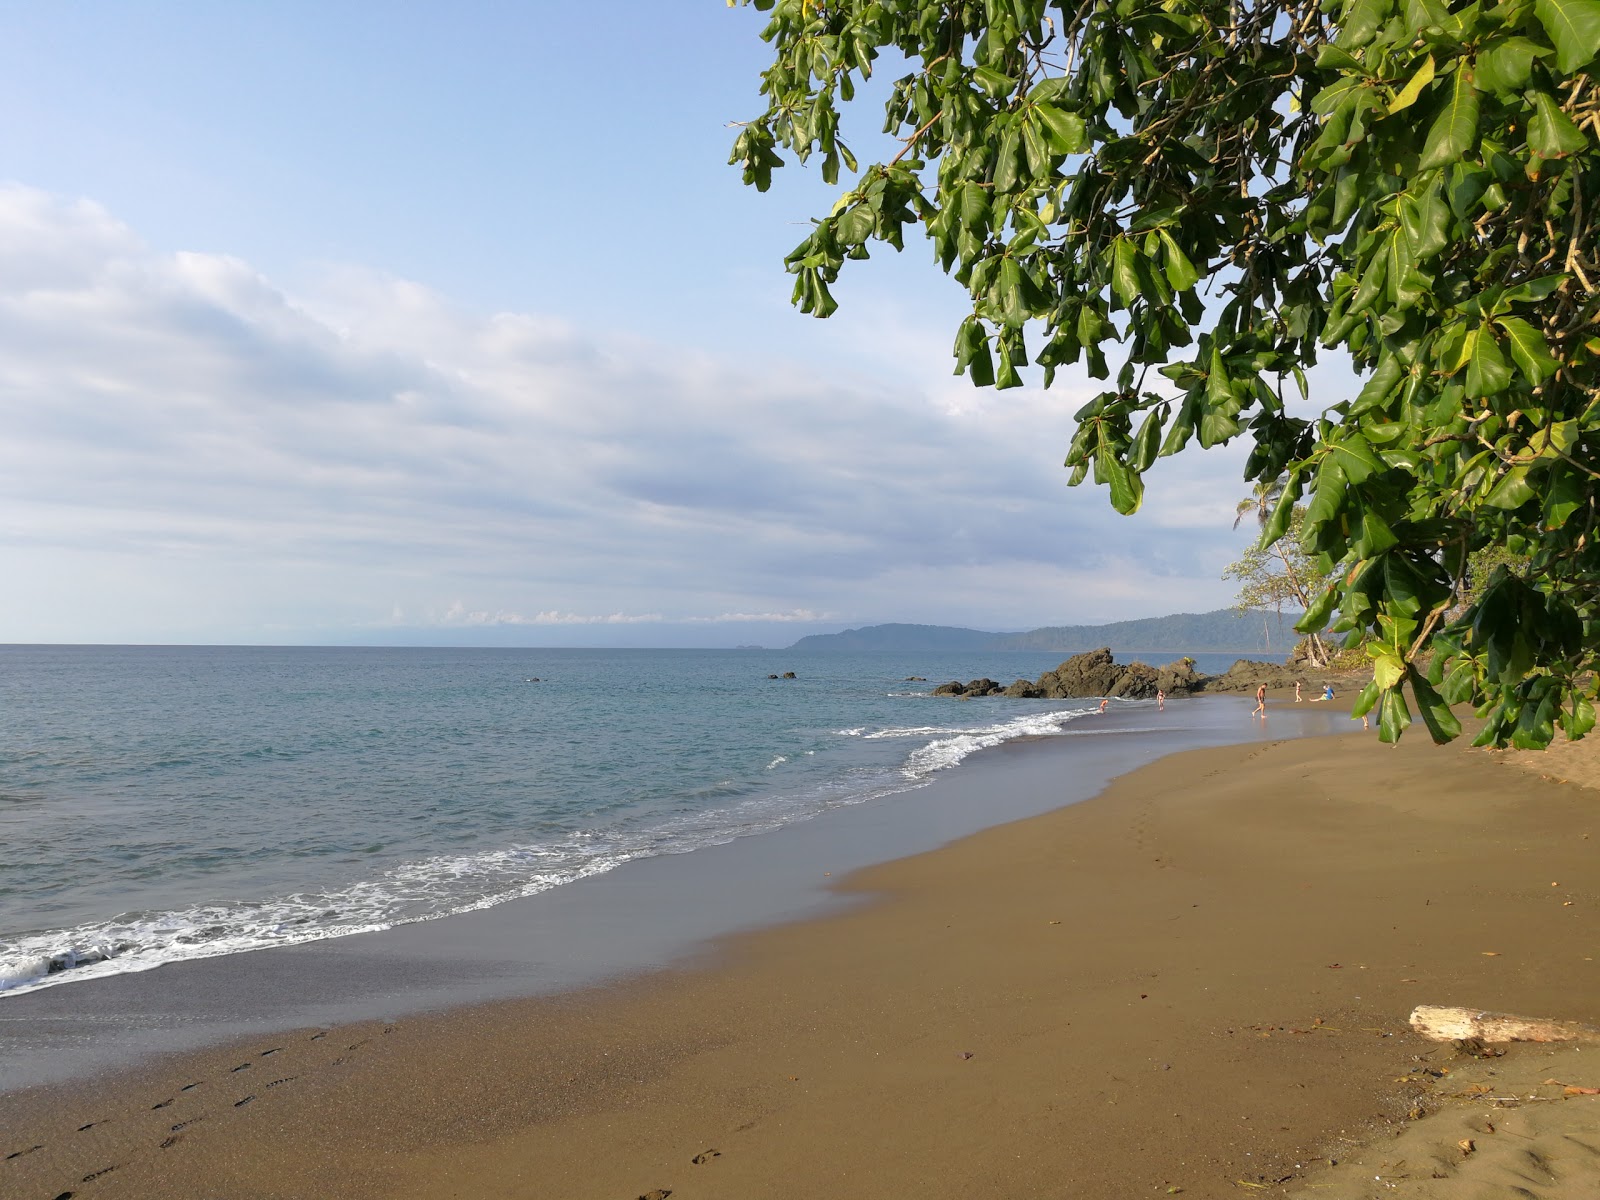 Cocalito Beach'in fotoğrafı geniş plaj ile birlikte